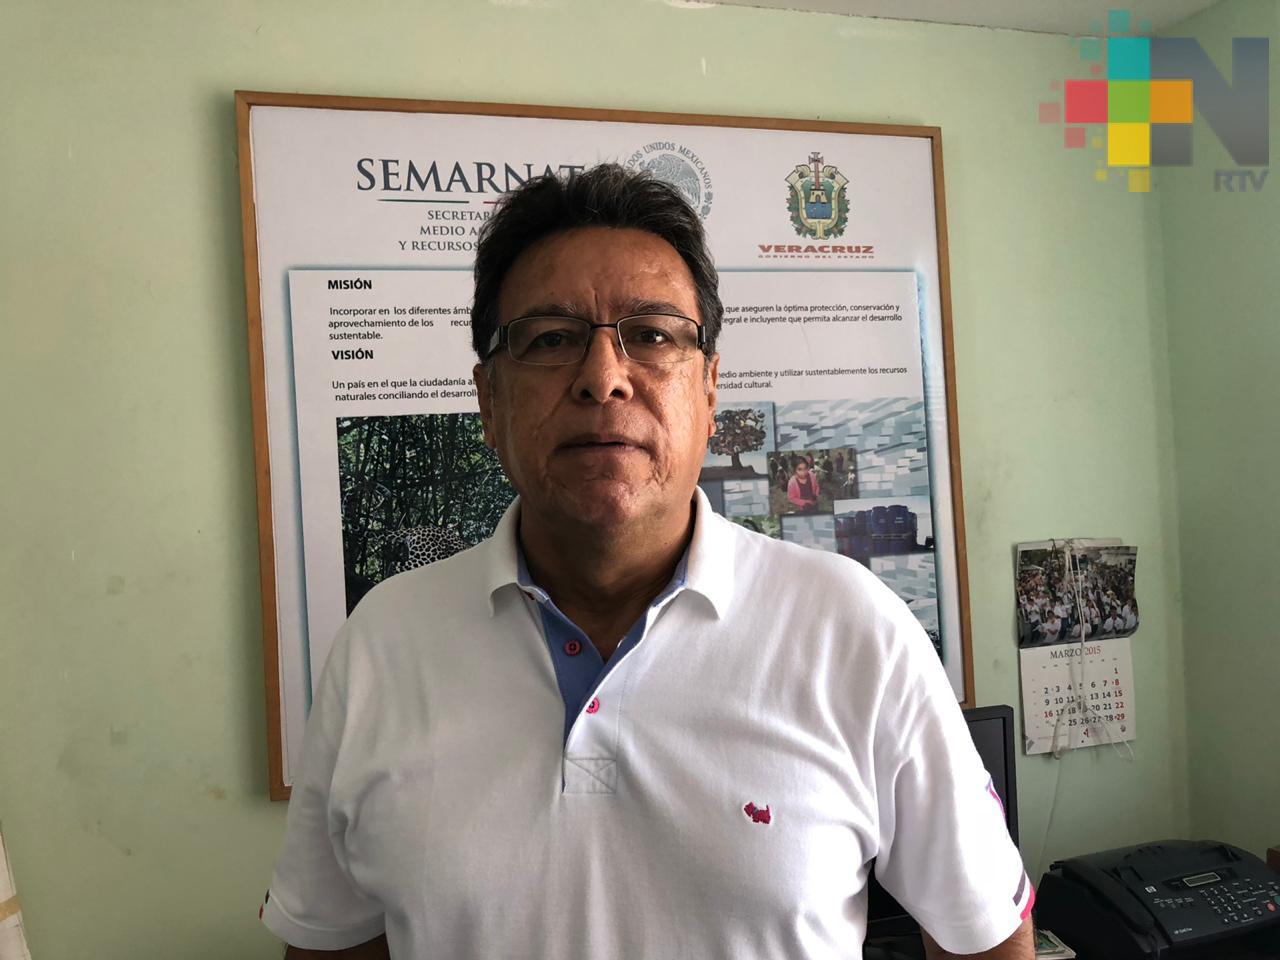 Semarnat ha realizado 20 estudios de impacto ambiental en la zona sur de Veracruz